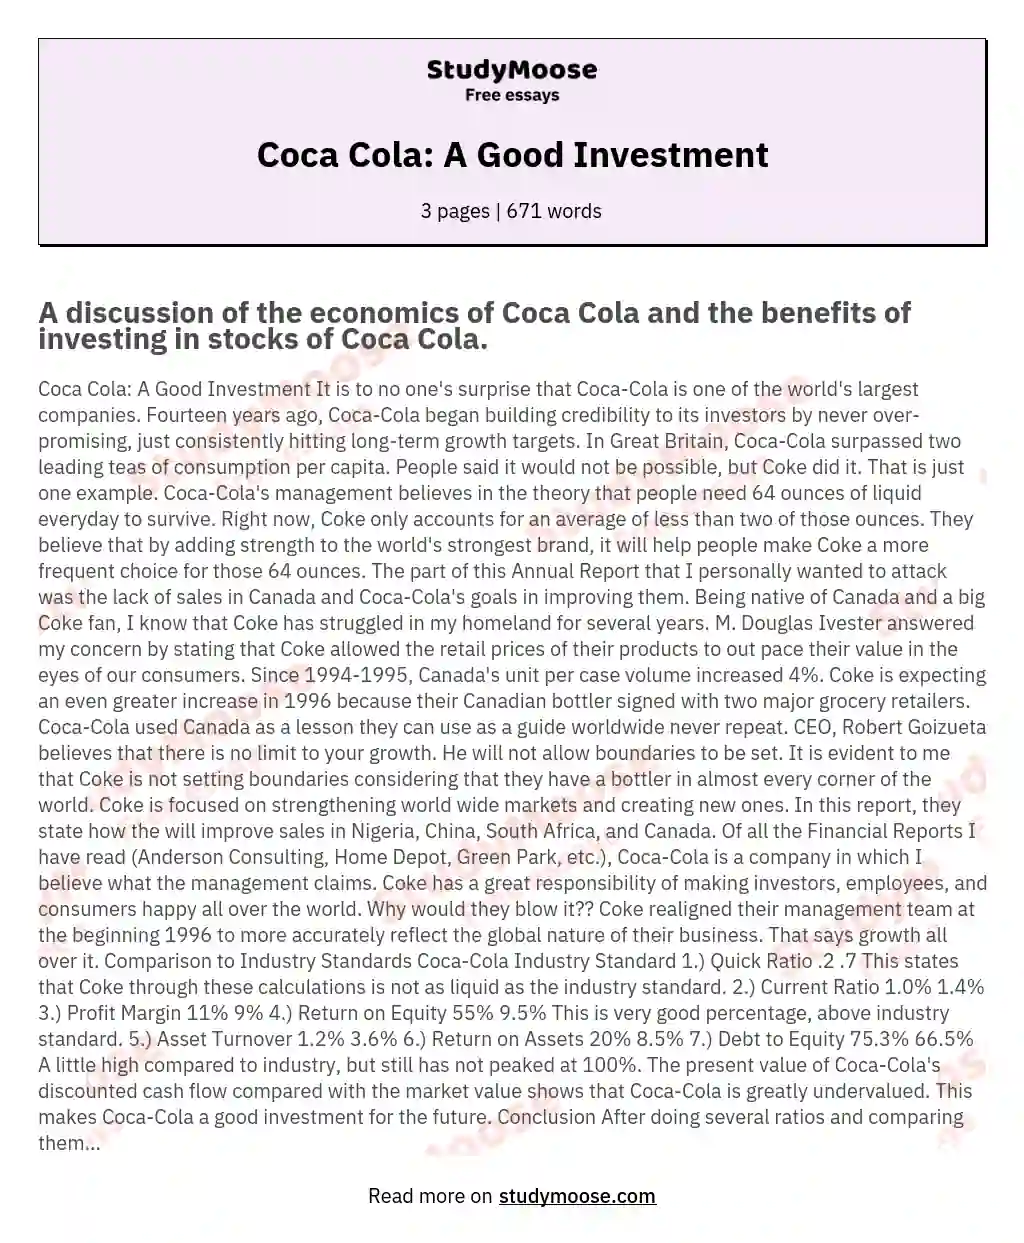 Coca Cola: A Good Investment essay